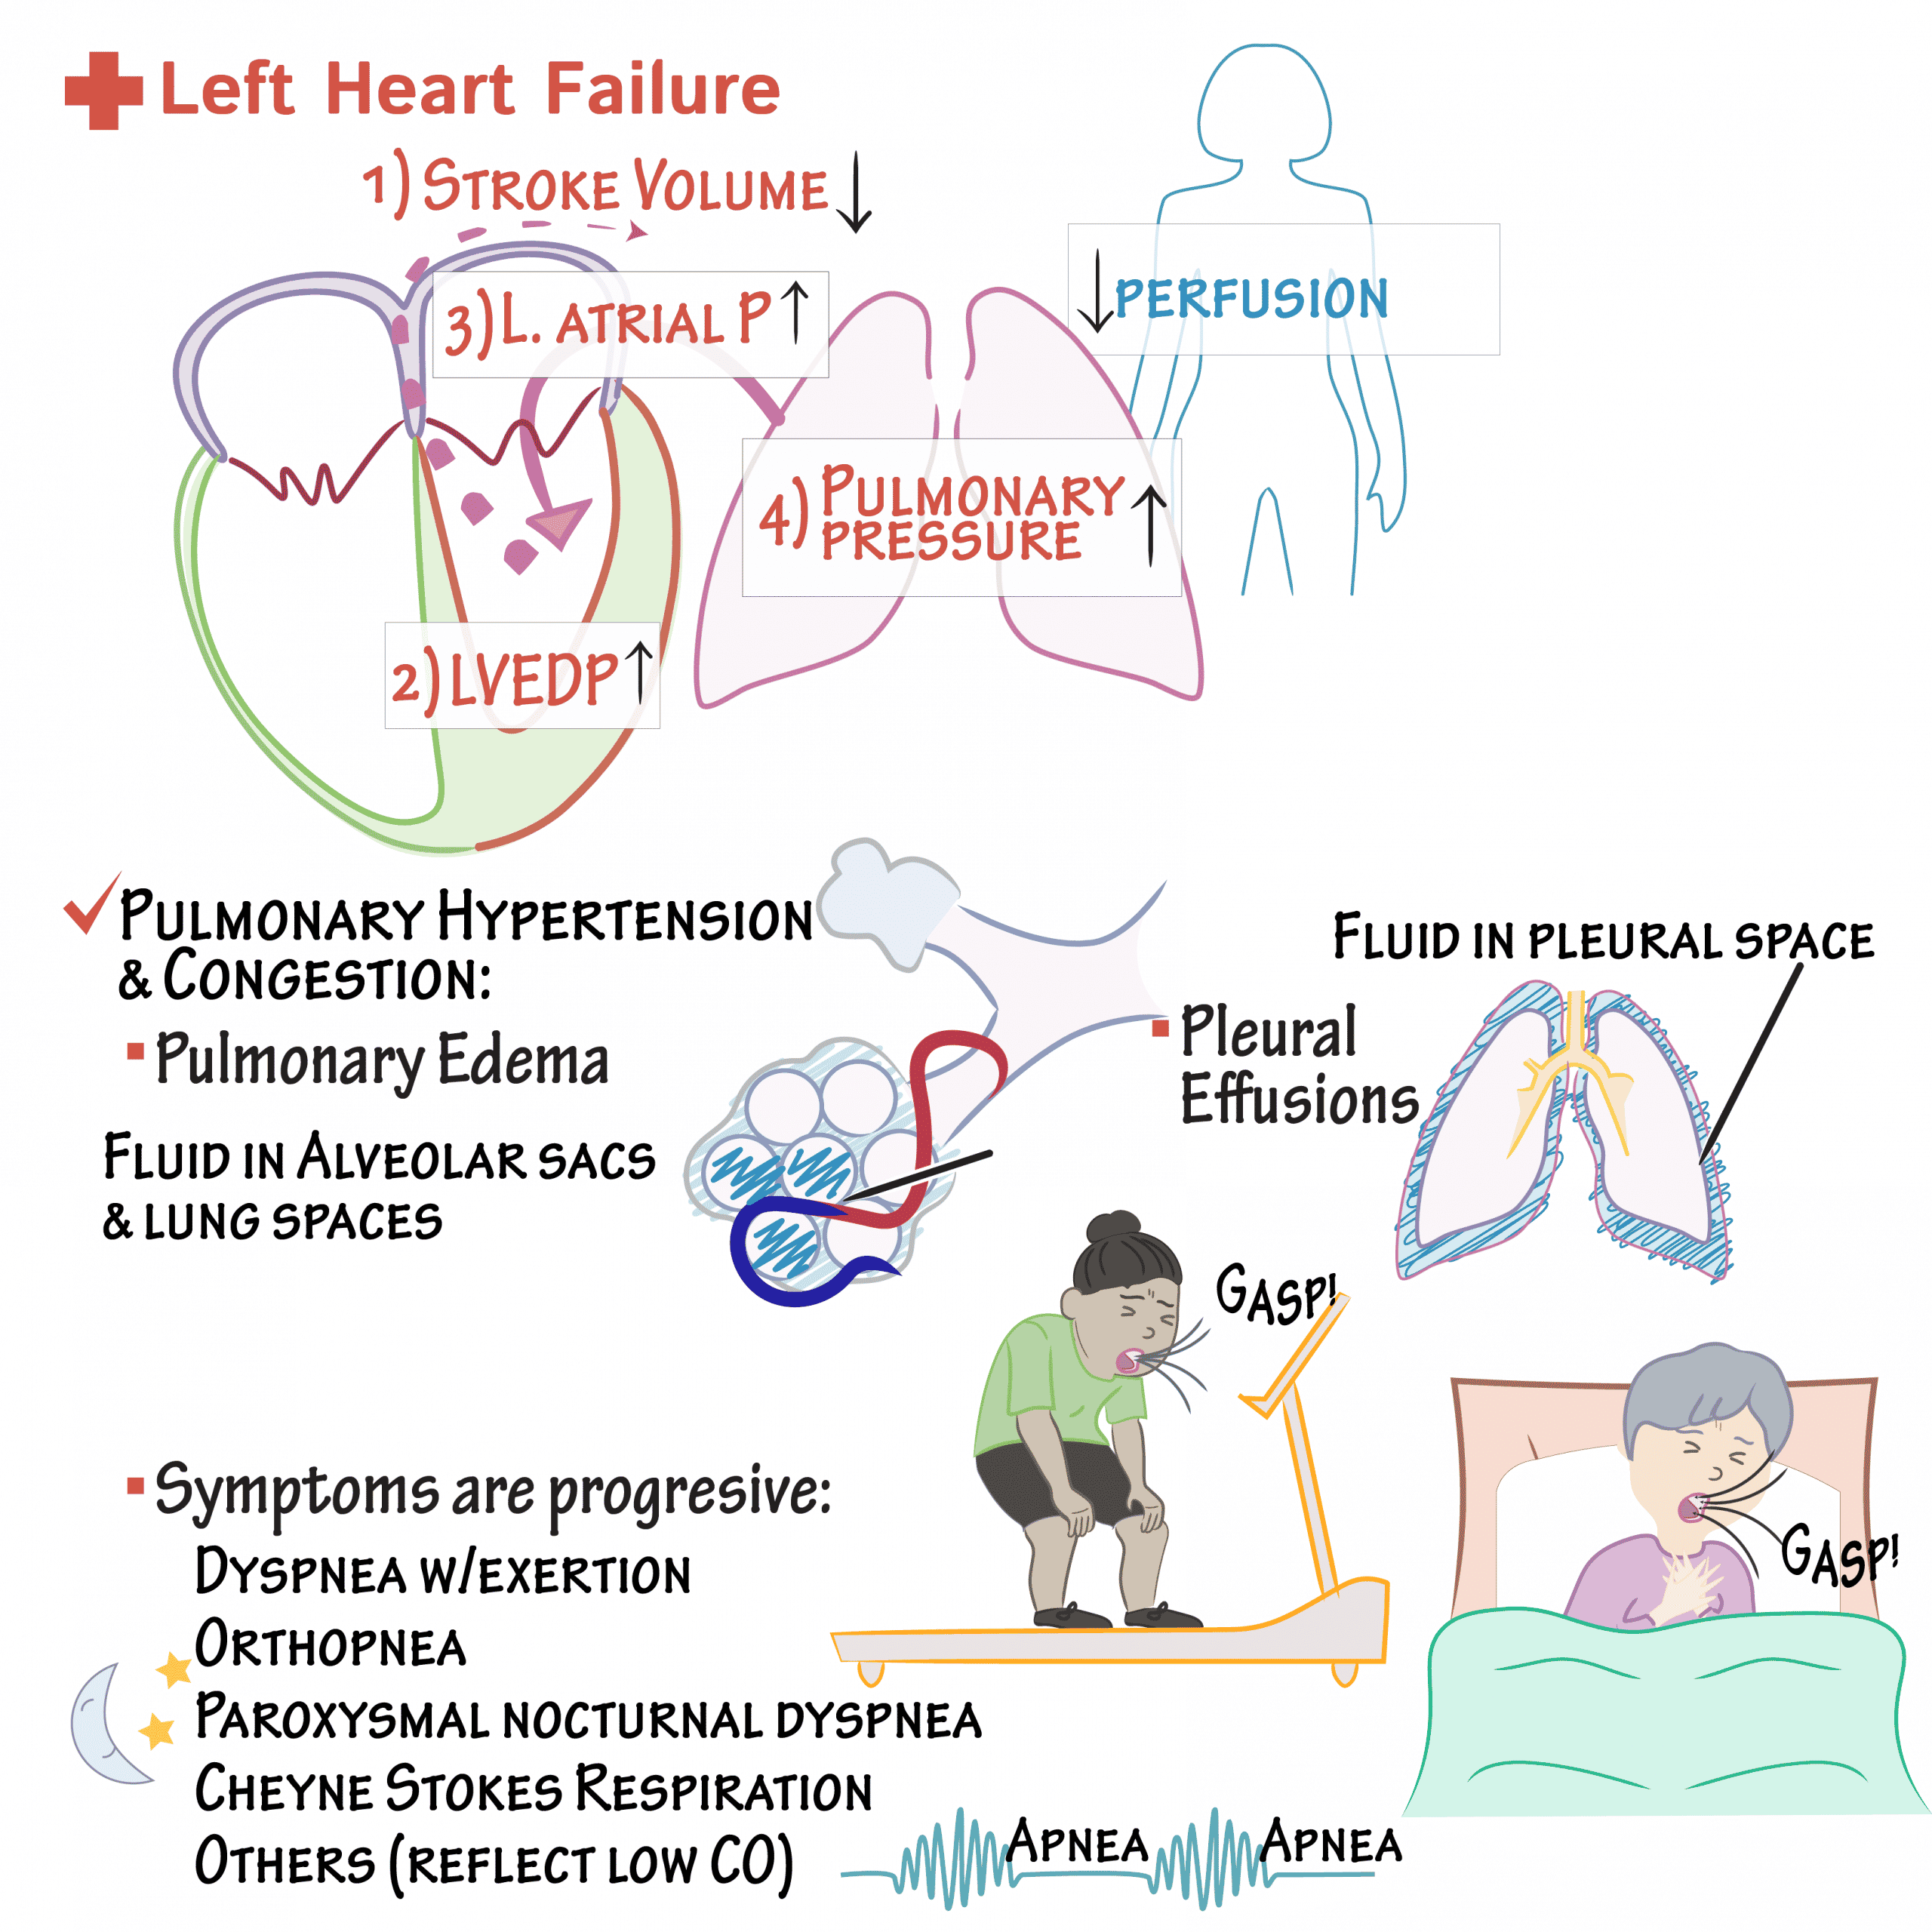 Left Heart Disease Symptoms